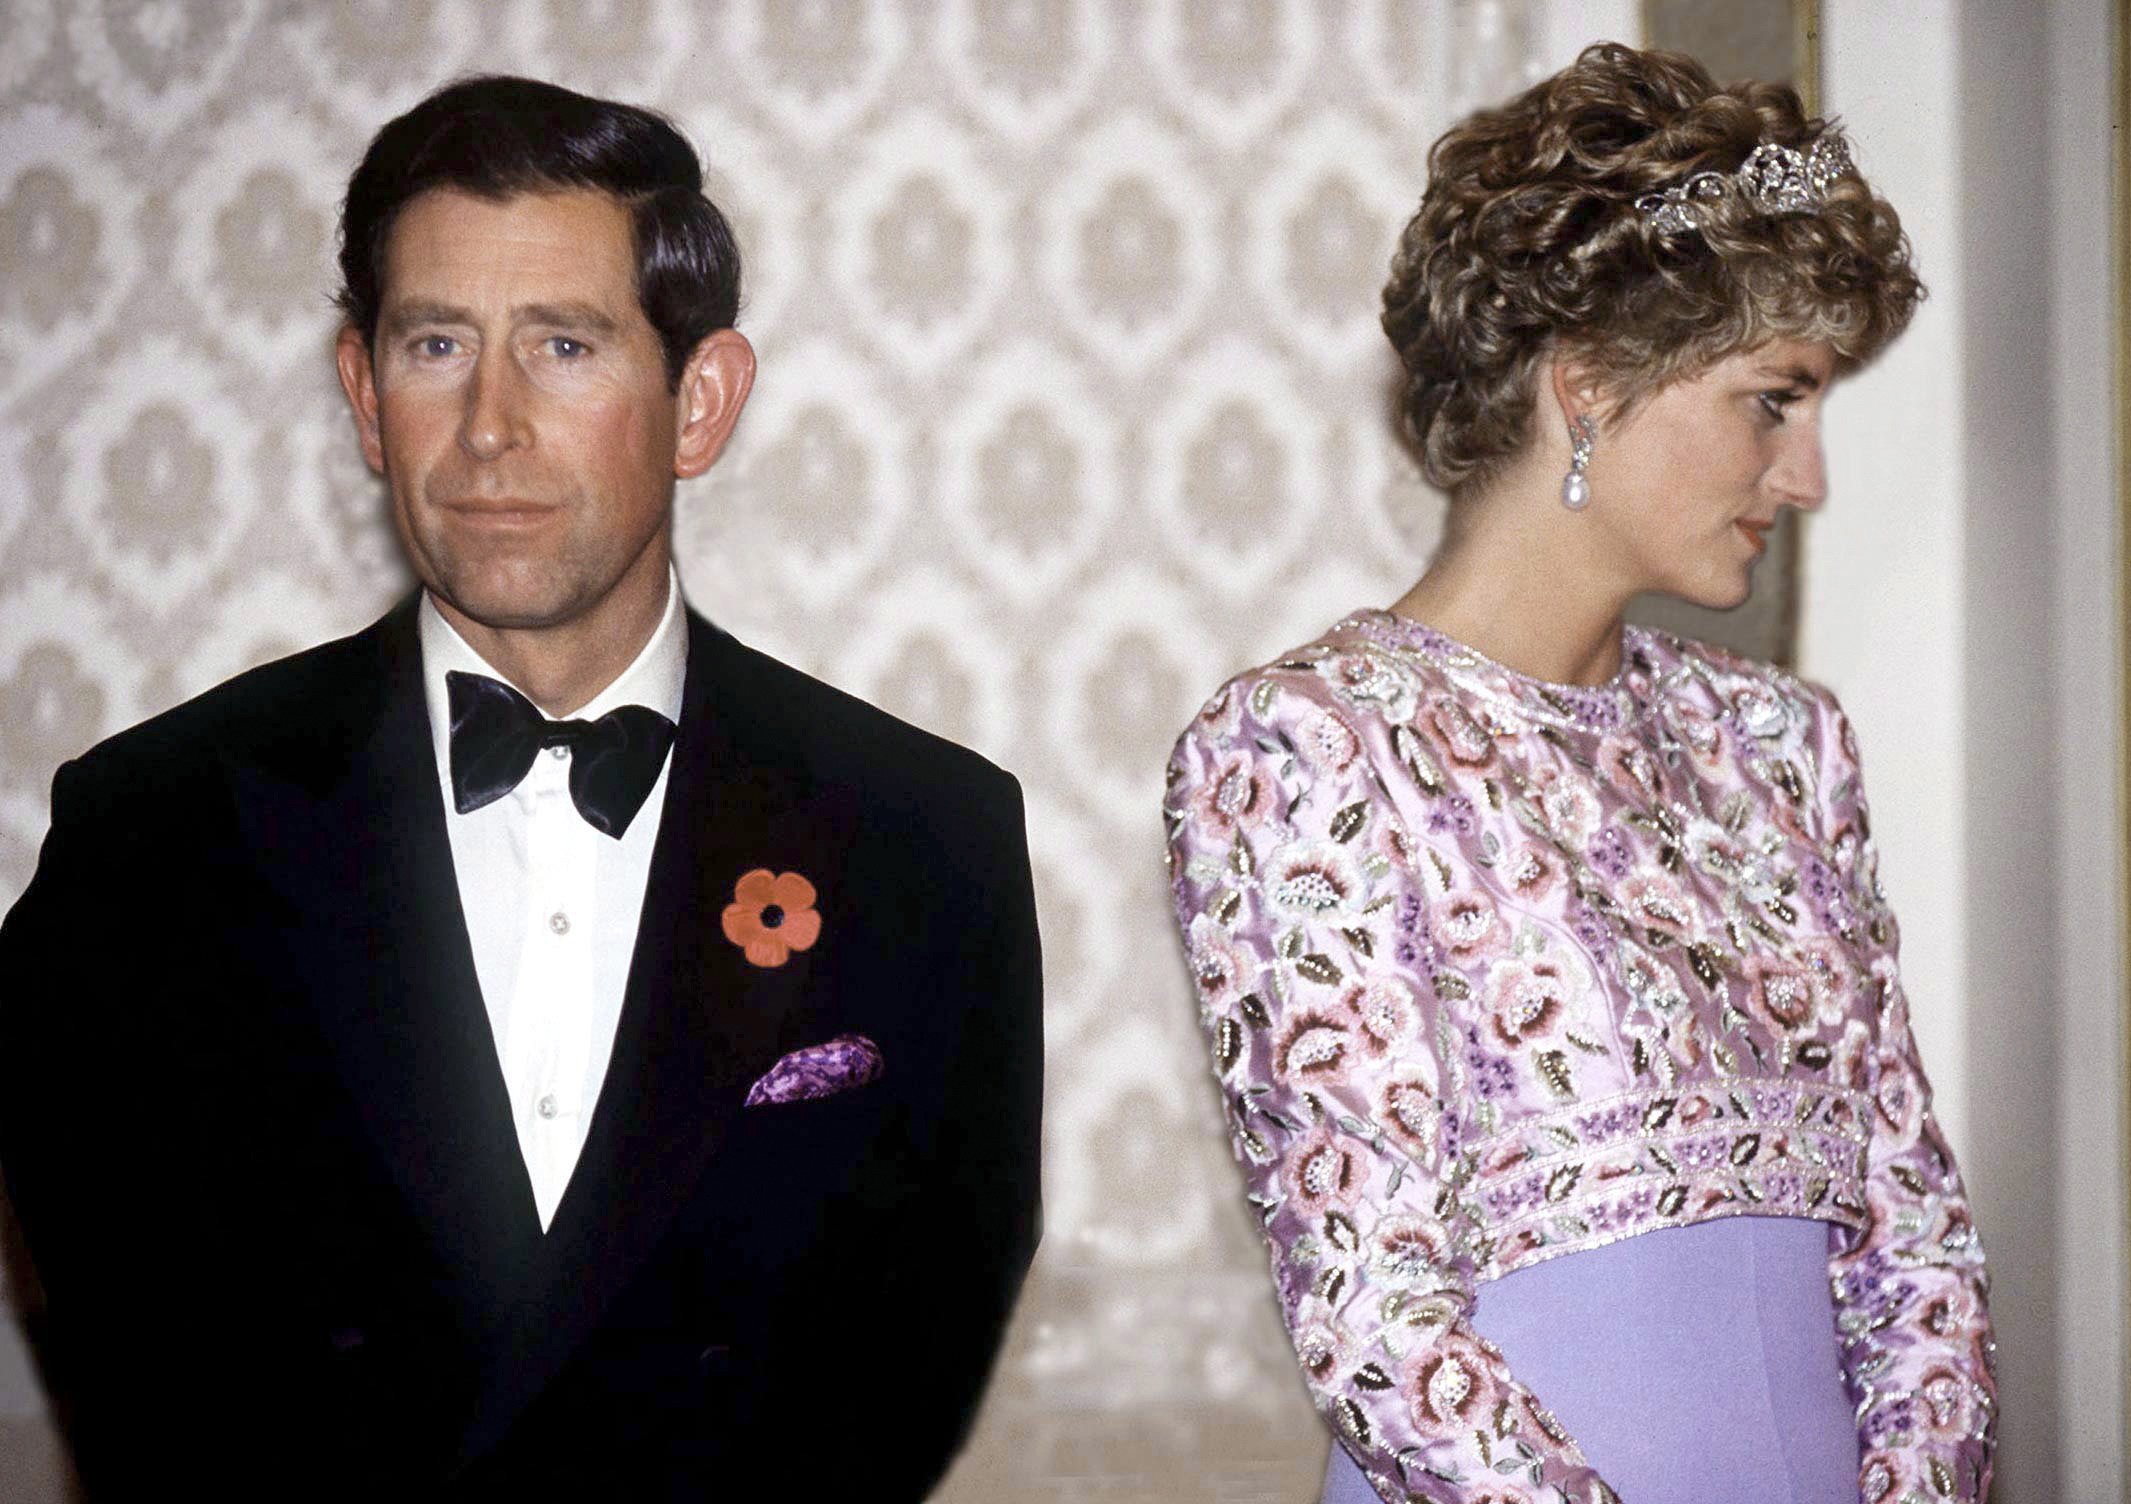 Charles, Princes de Galles avec son épouse, Diana, Princesse de Galles photographiés lors de leur dernier voyage officiel ensemble, pendant leur visite en Corée du Sud. | Source : Getty Images